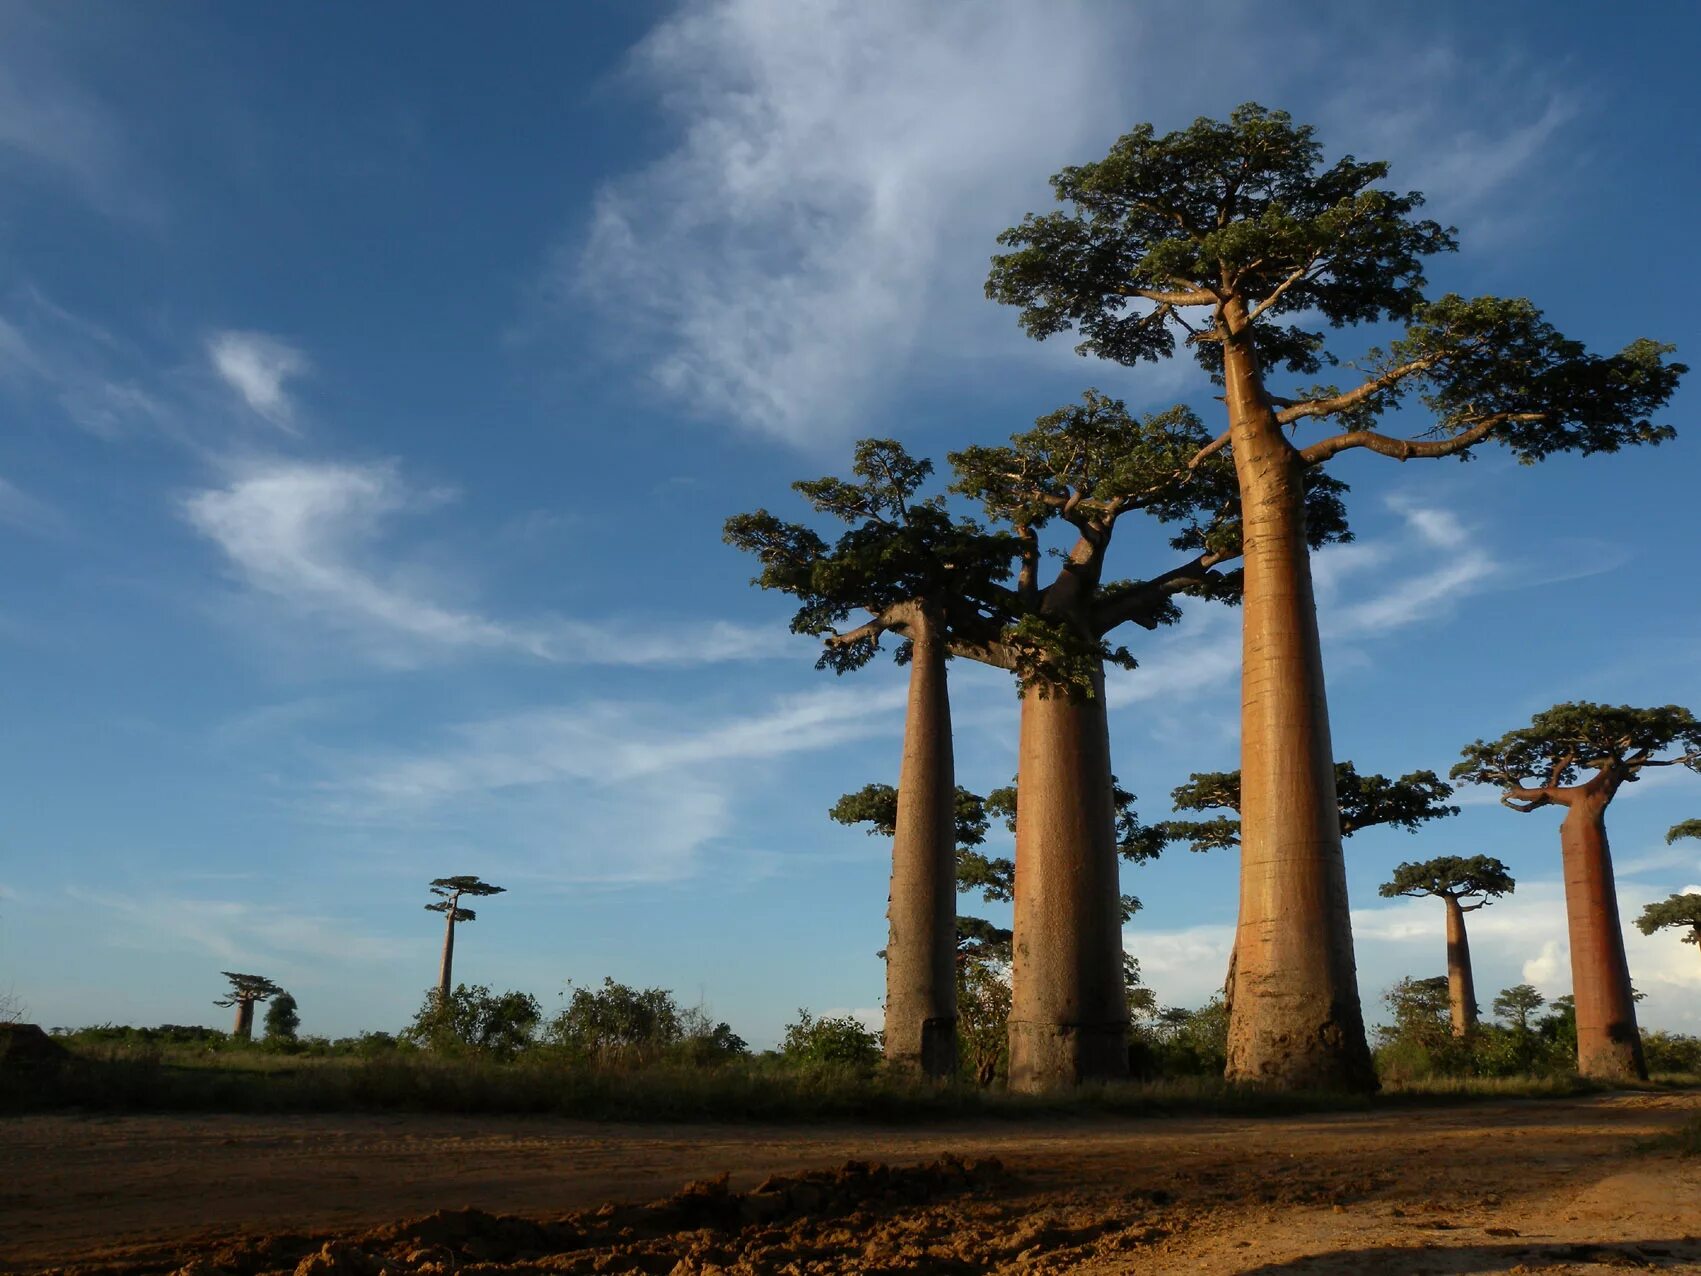 Ба баб. Аллея баобабов Мадагаскар. Баобаб ЮАР. Баобаб (Адансония пальчатая. Мадагаскар дерево баобаб Мадагаскар.